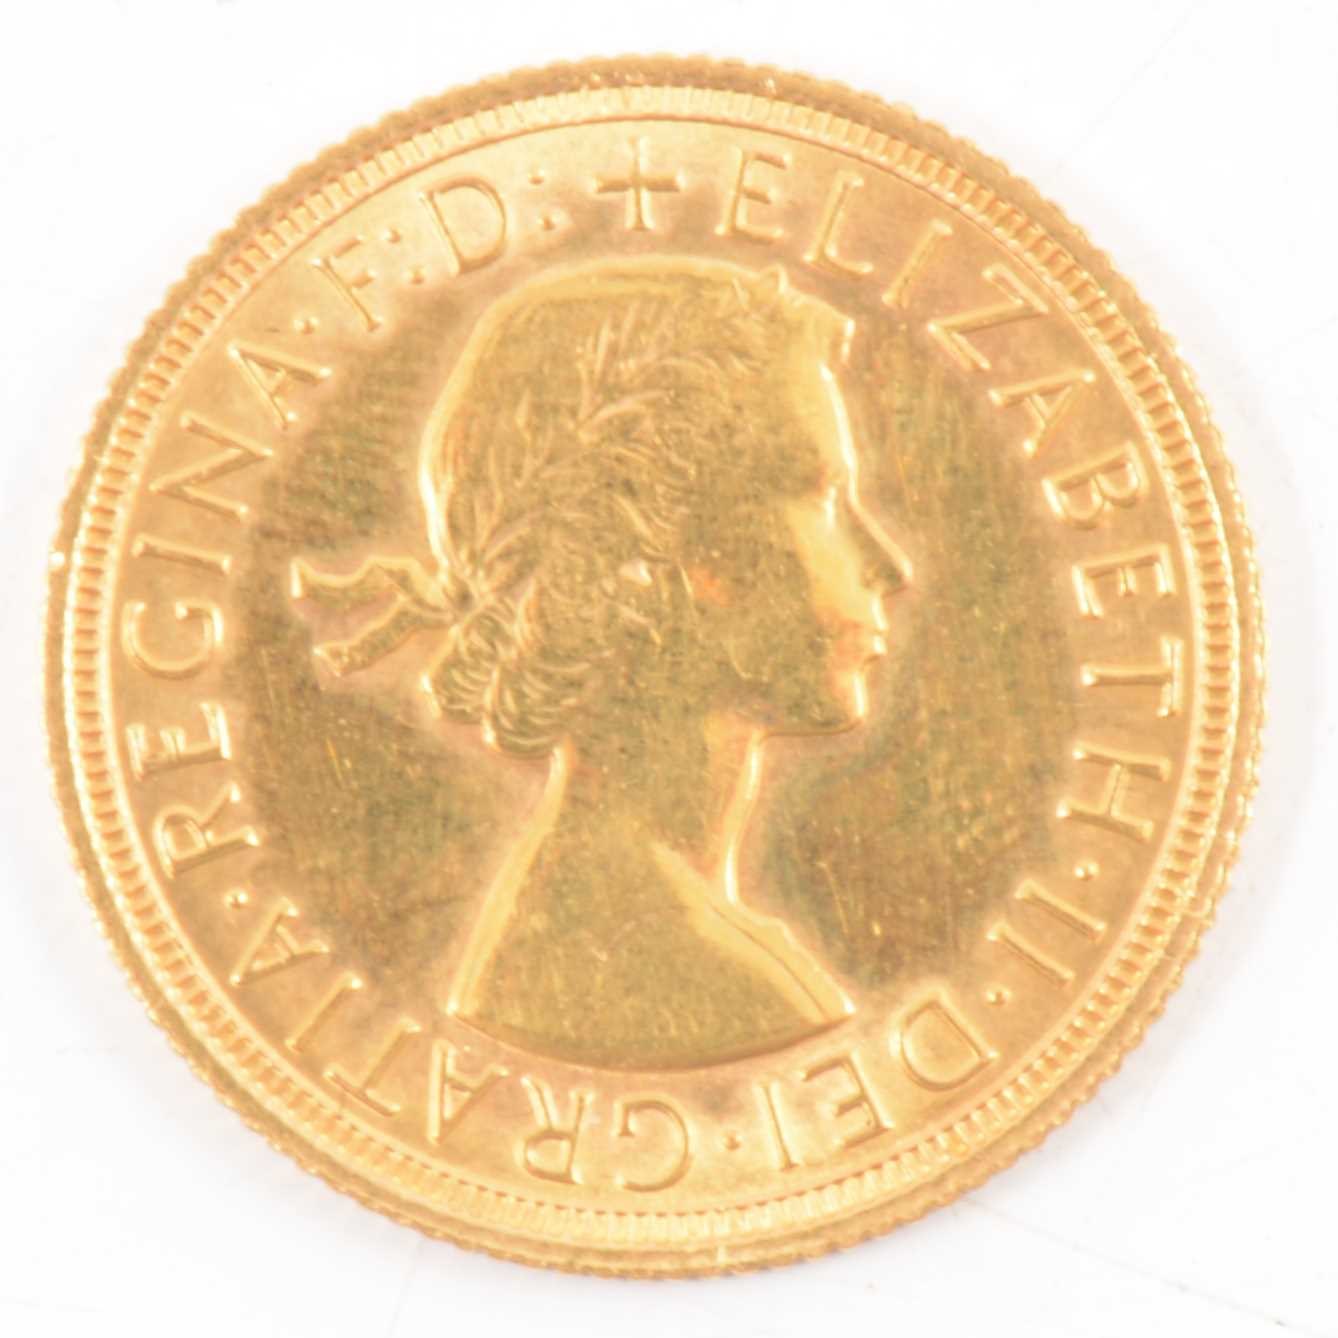 Lot 172 - Elizabeth II gold Sovereign, 1968, 8g